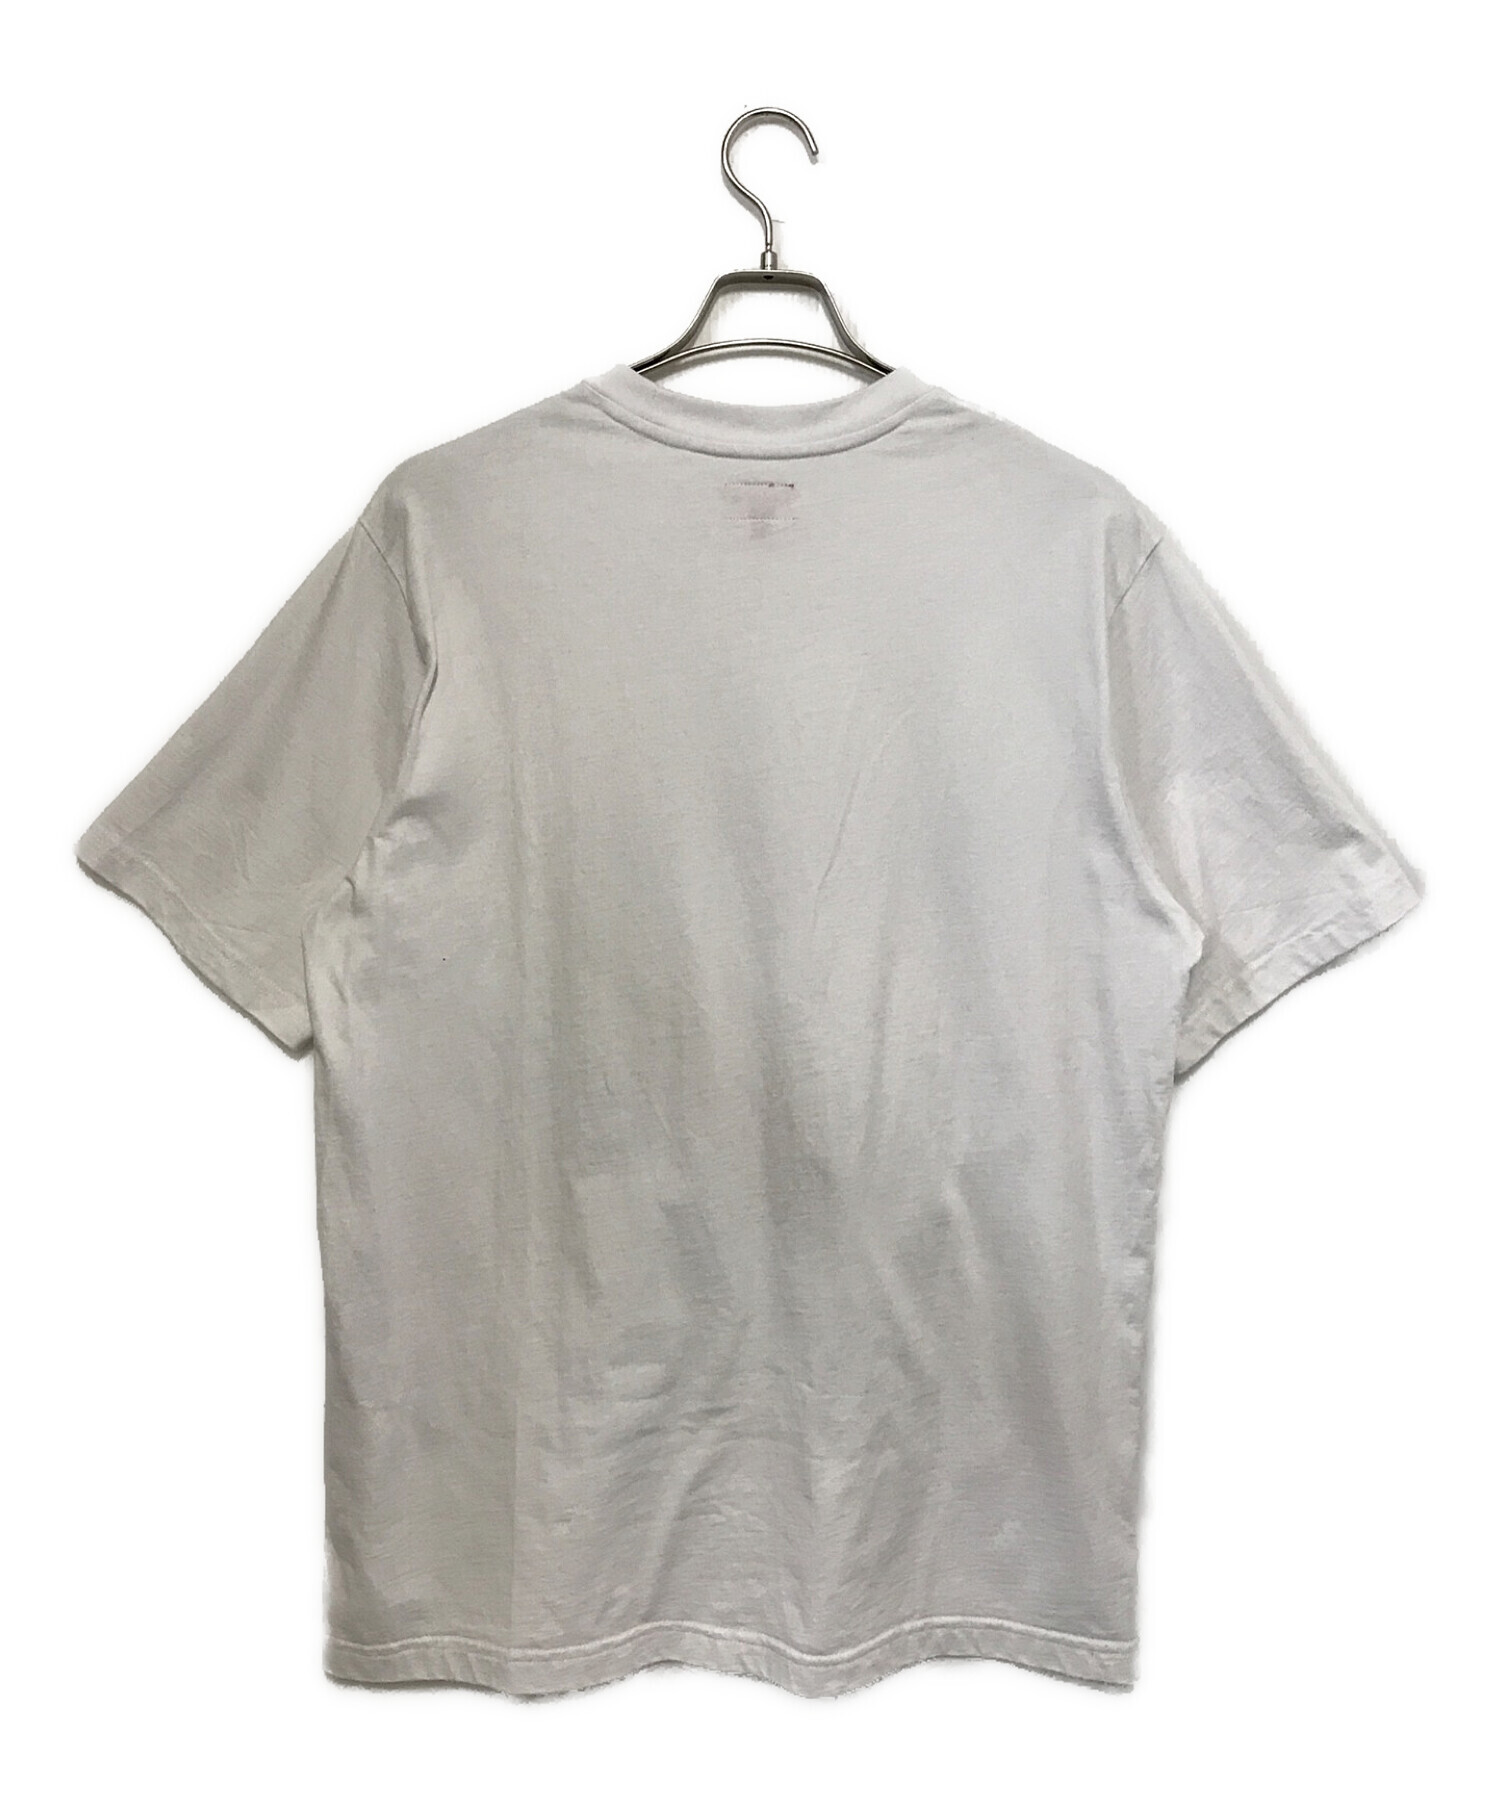 Supreme アーチロゴ Tシャツ ホワイト Mサイズ